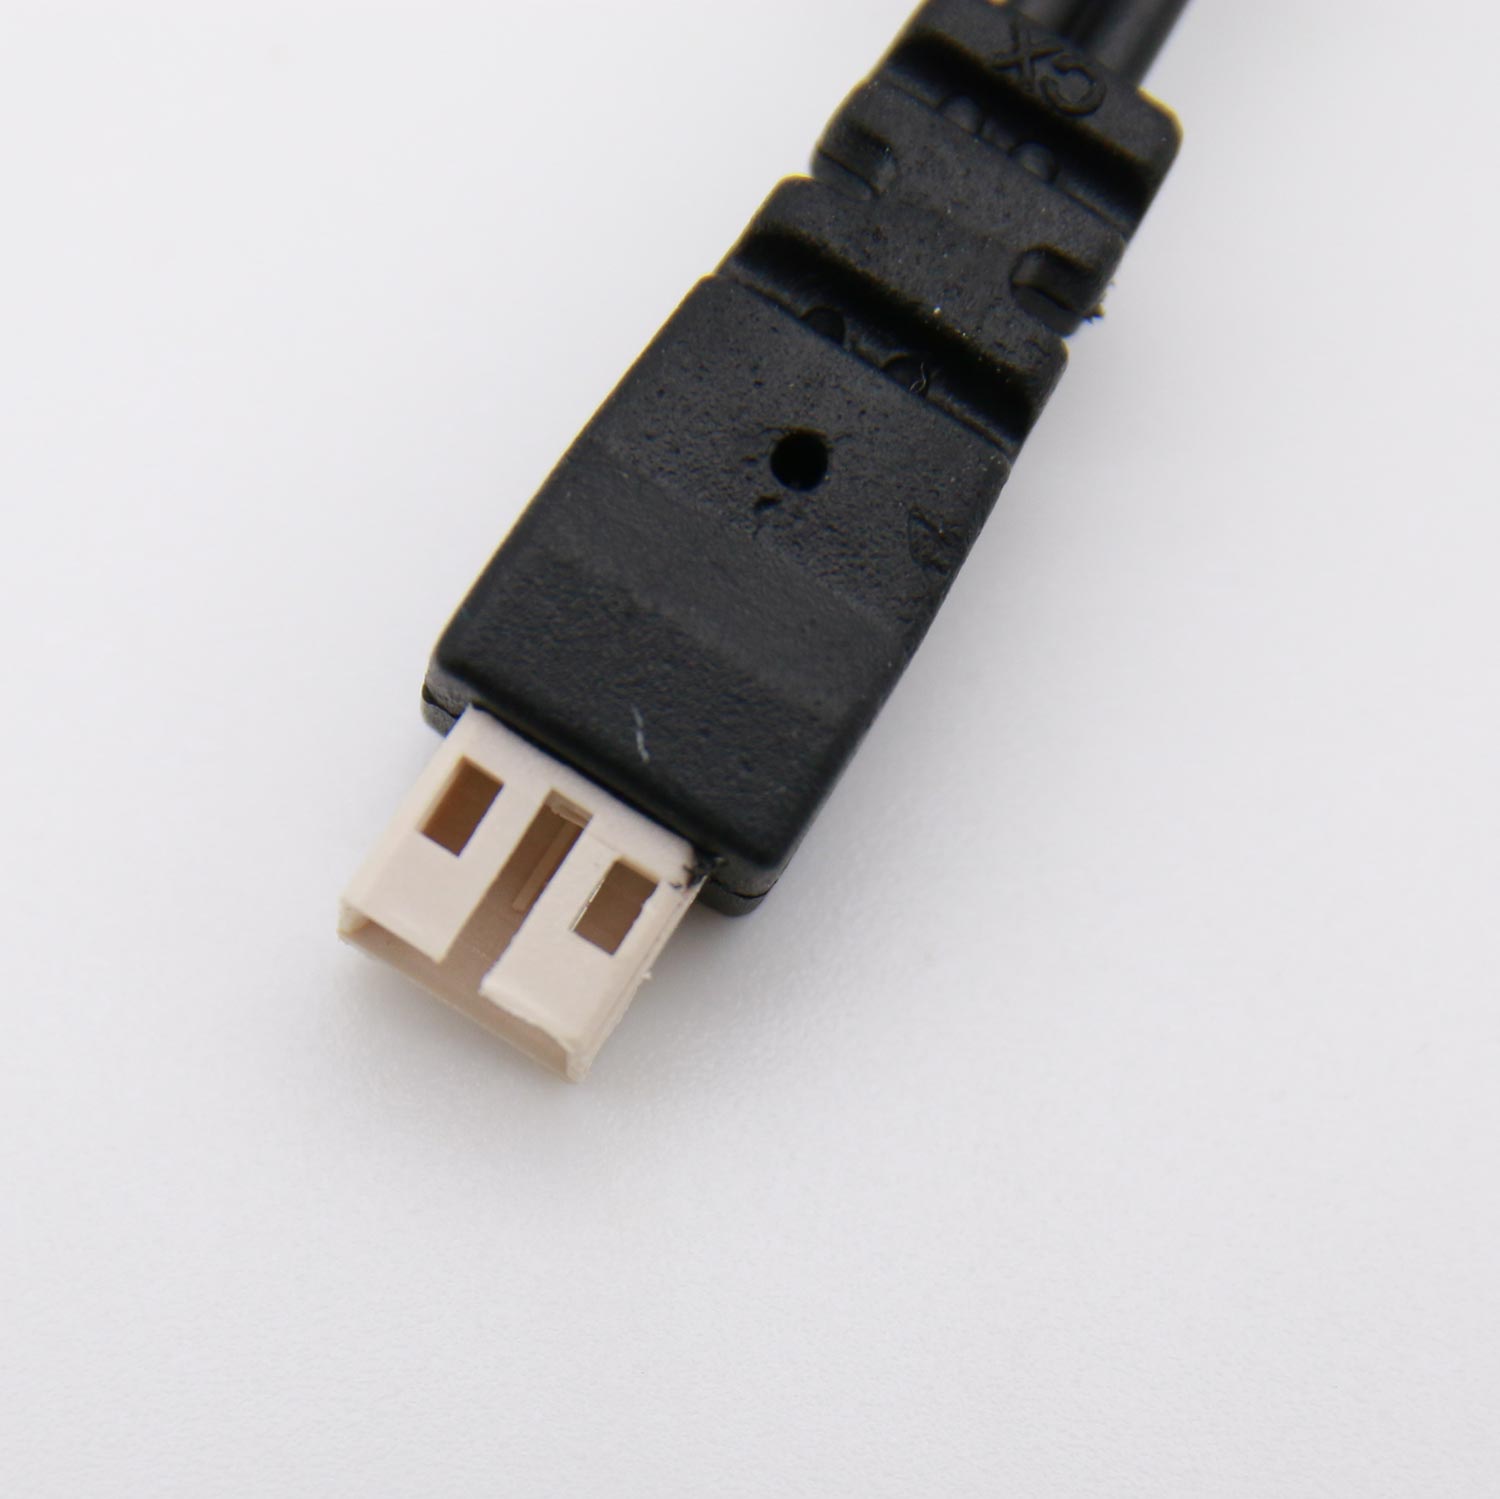 PH2 커넥터 배터리용 USB 충전기